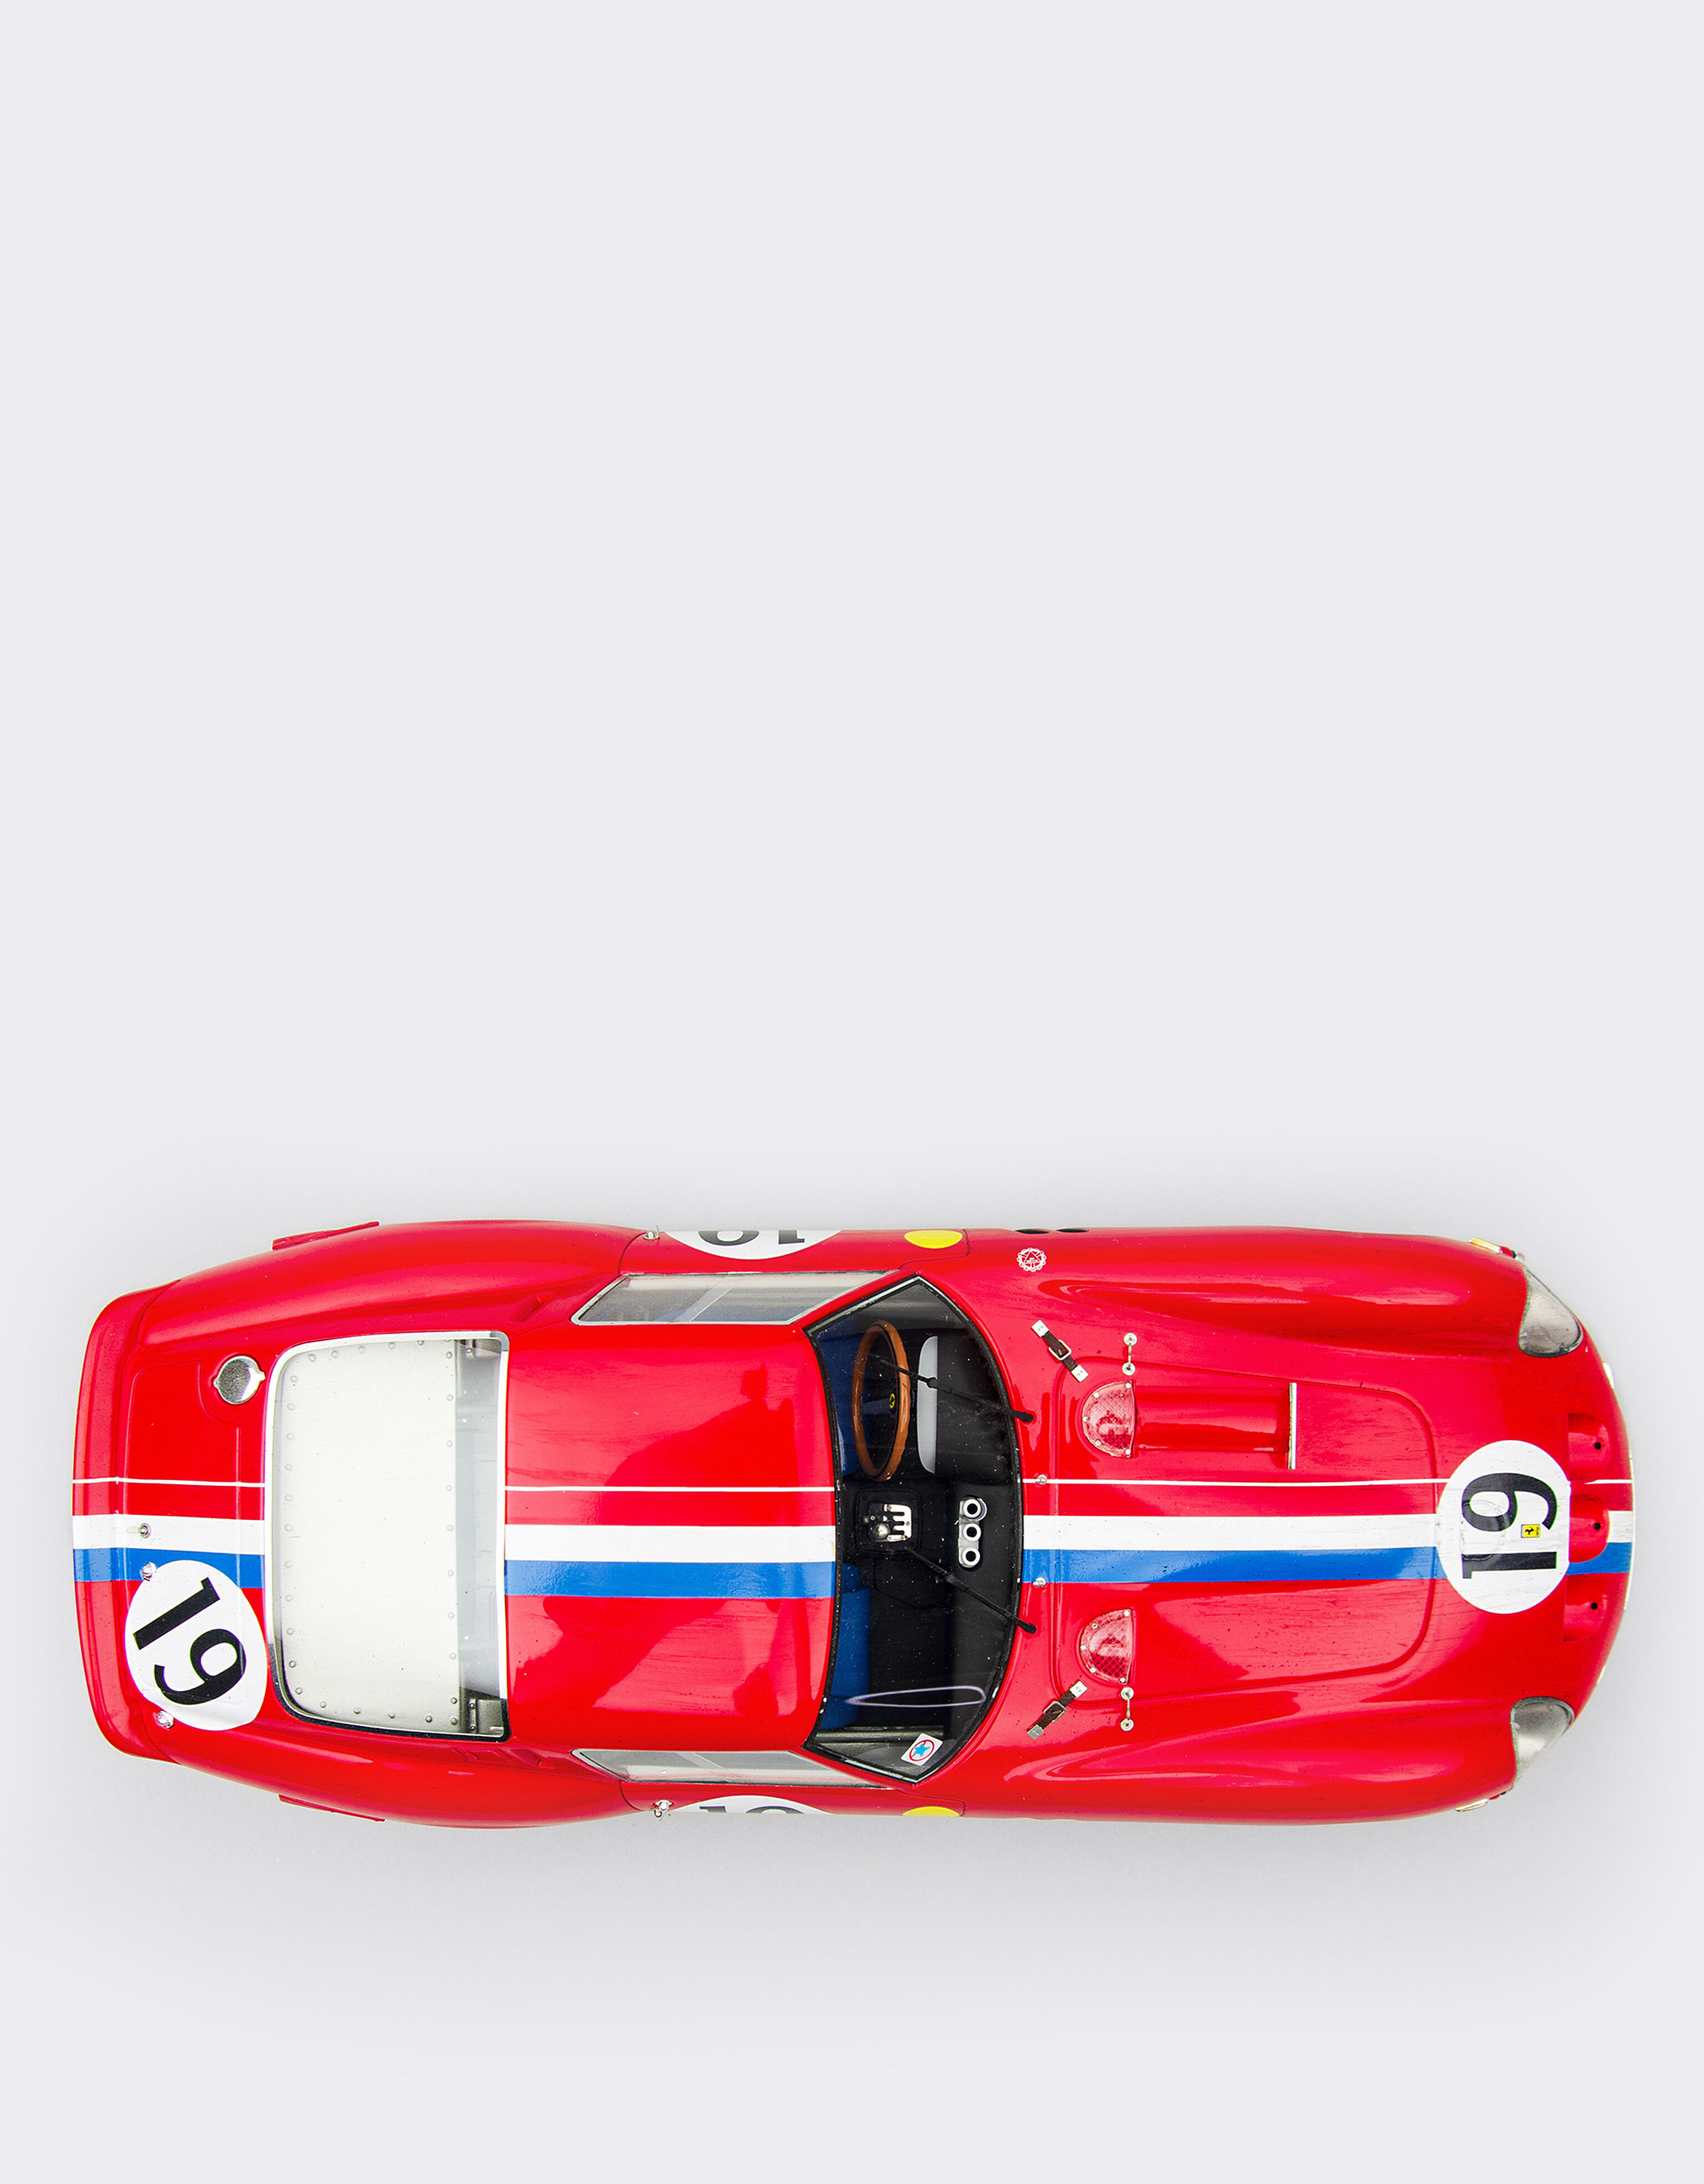 Ferrari Ferrari 250 GTO 1962 Le Mans model in 1:18 scale 红色 L9866f